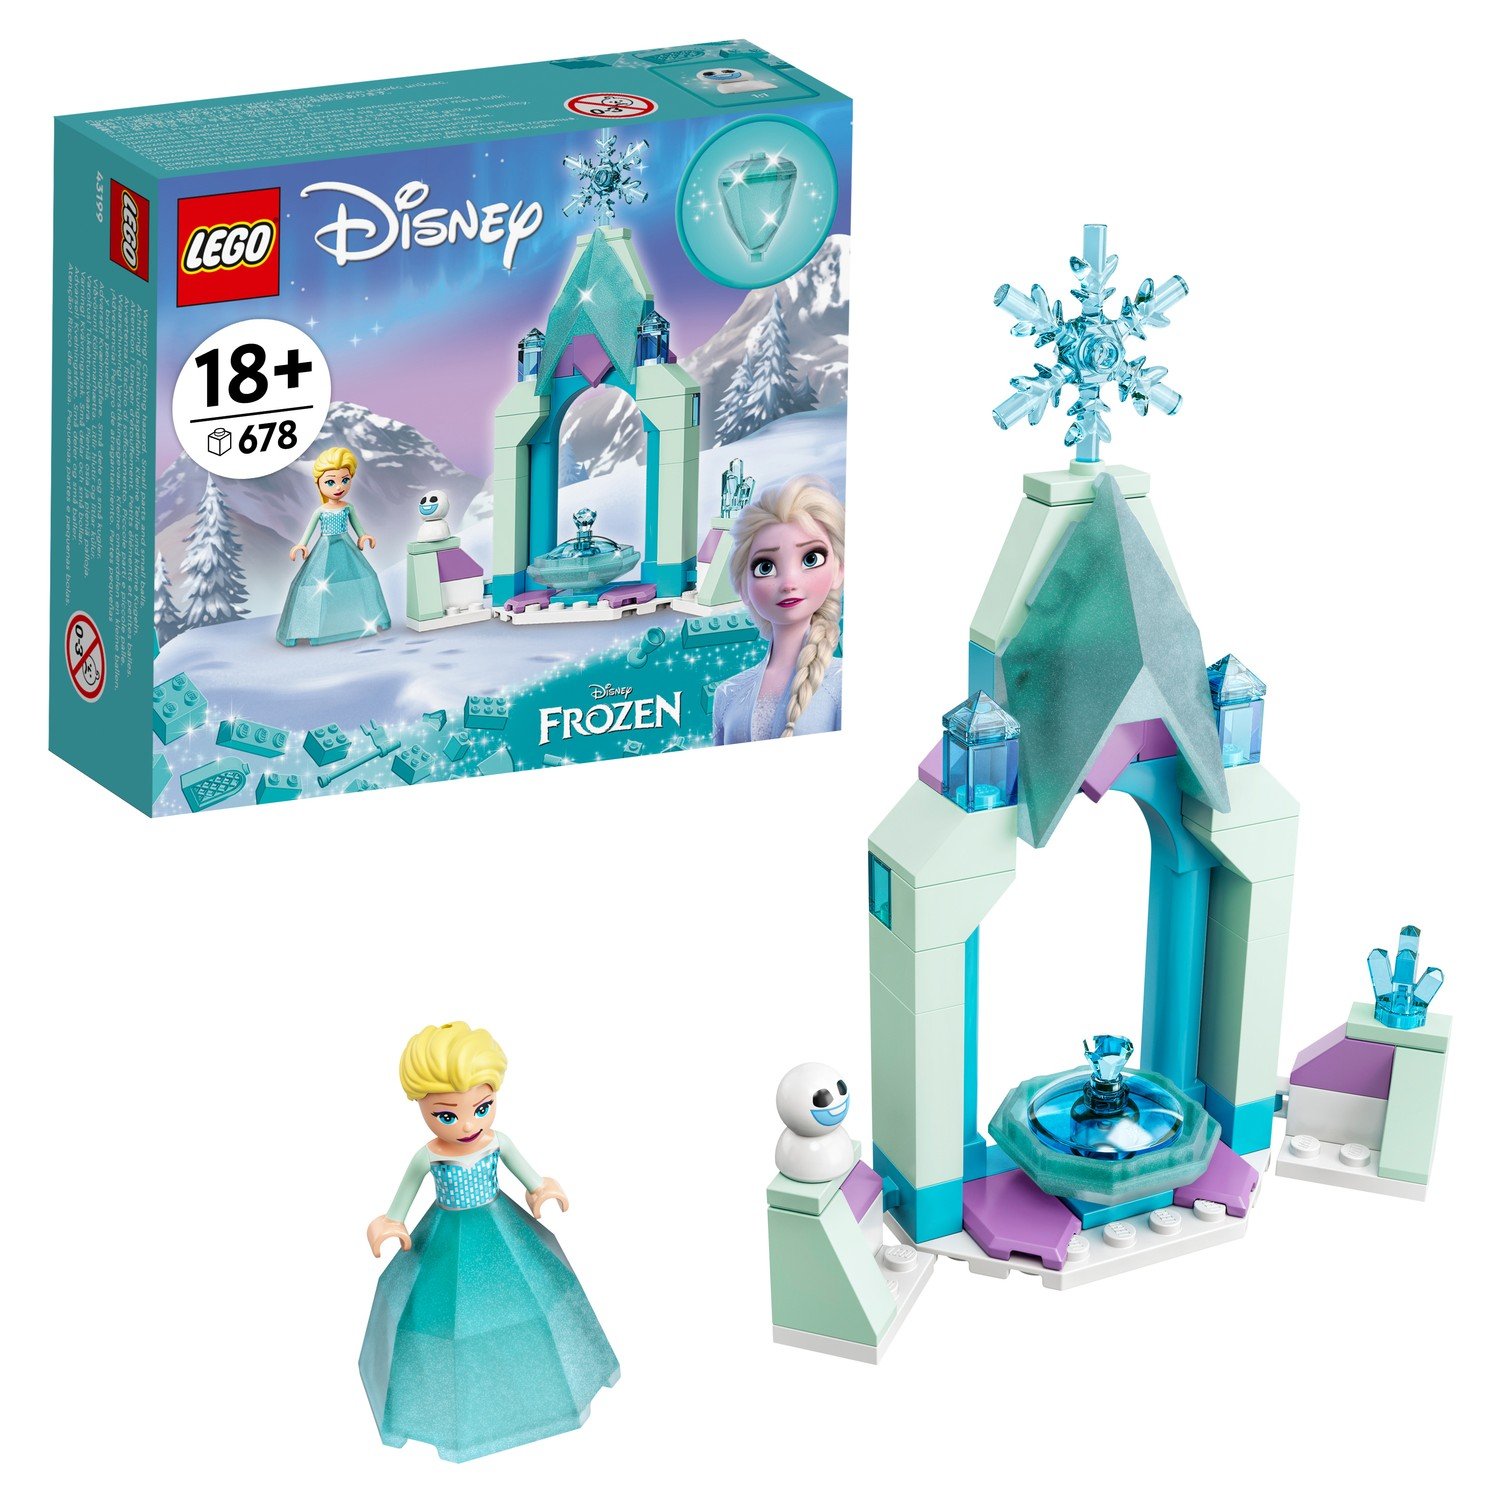 LEGO Disney Princess Frozen Двор замка Эльзы 43199 lego disney princess конструктор двор замка анны